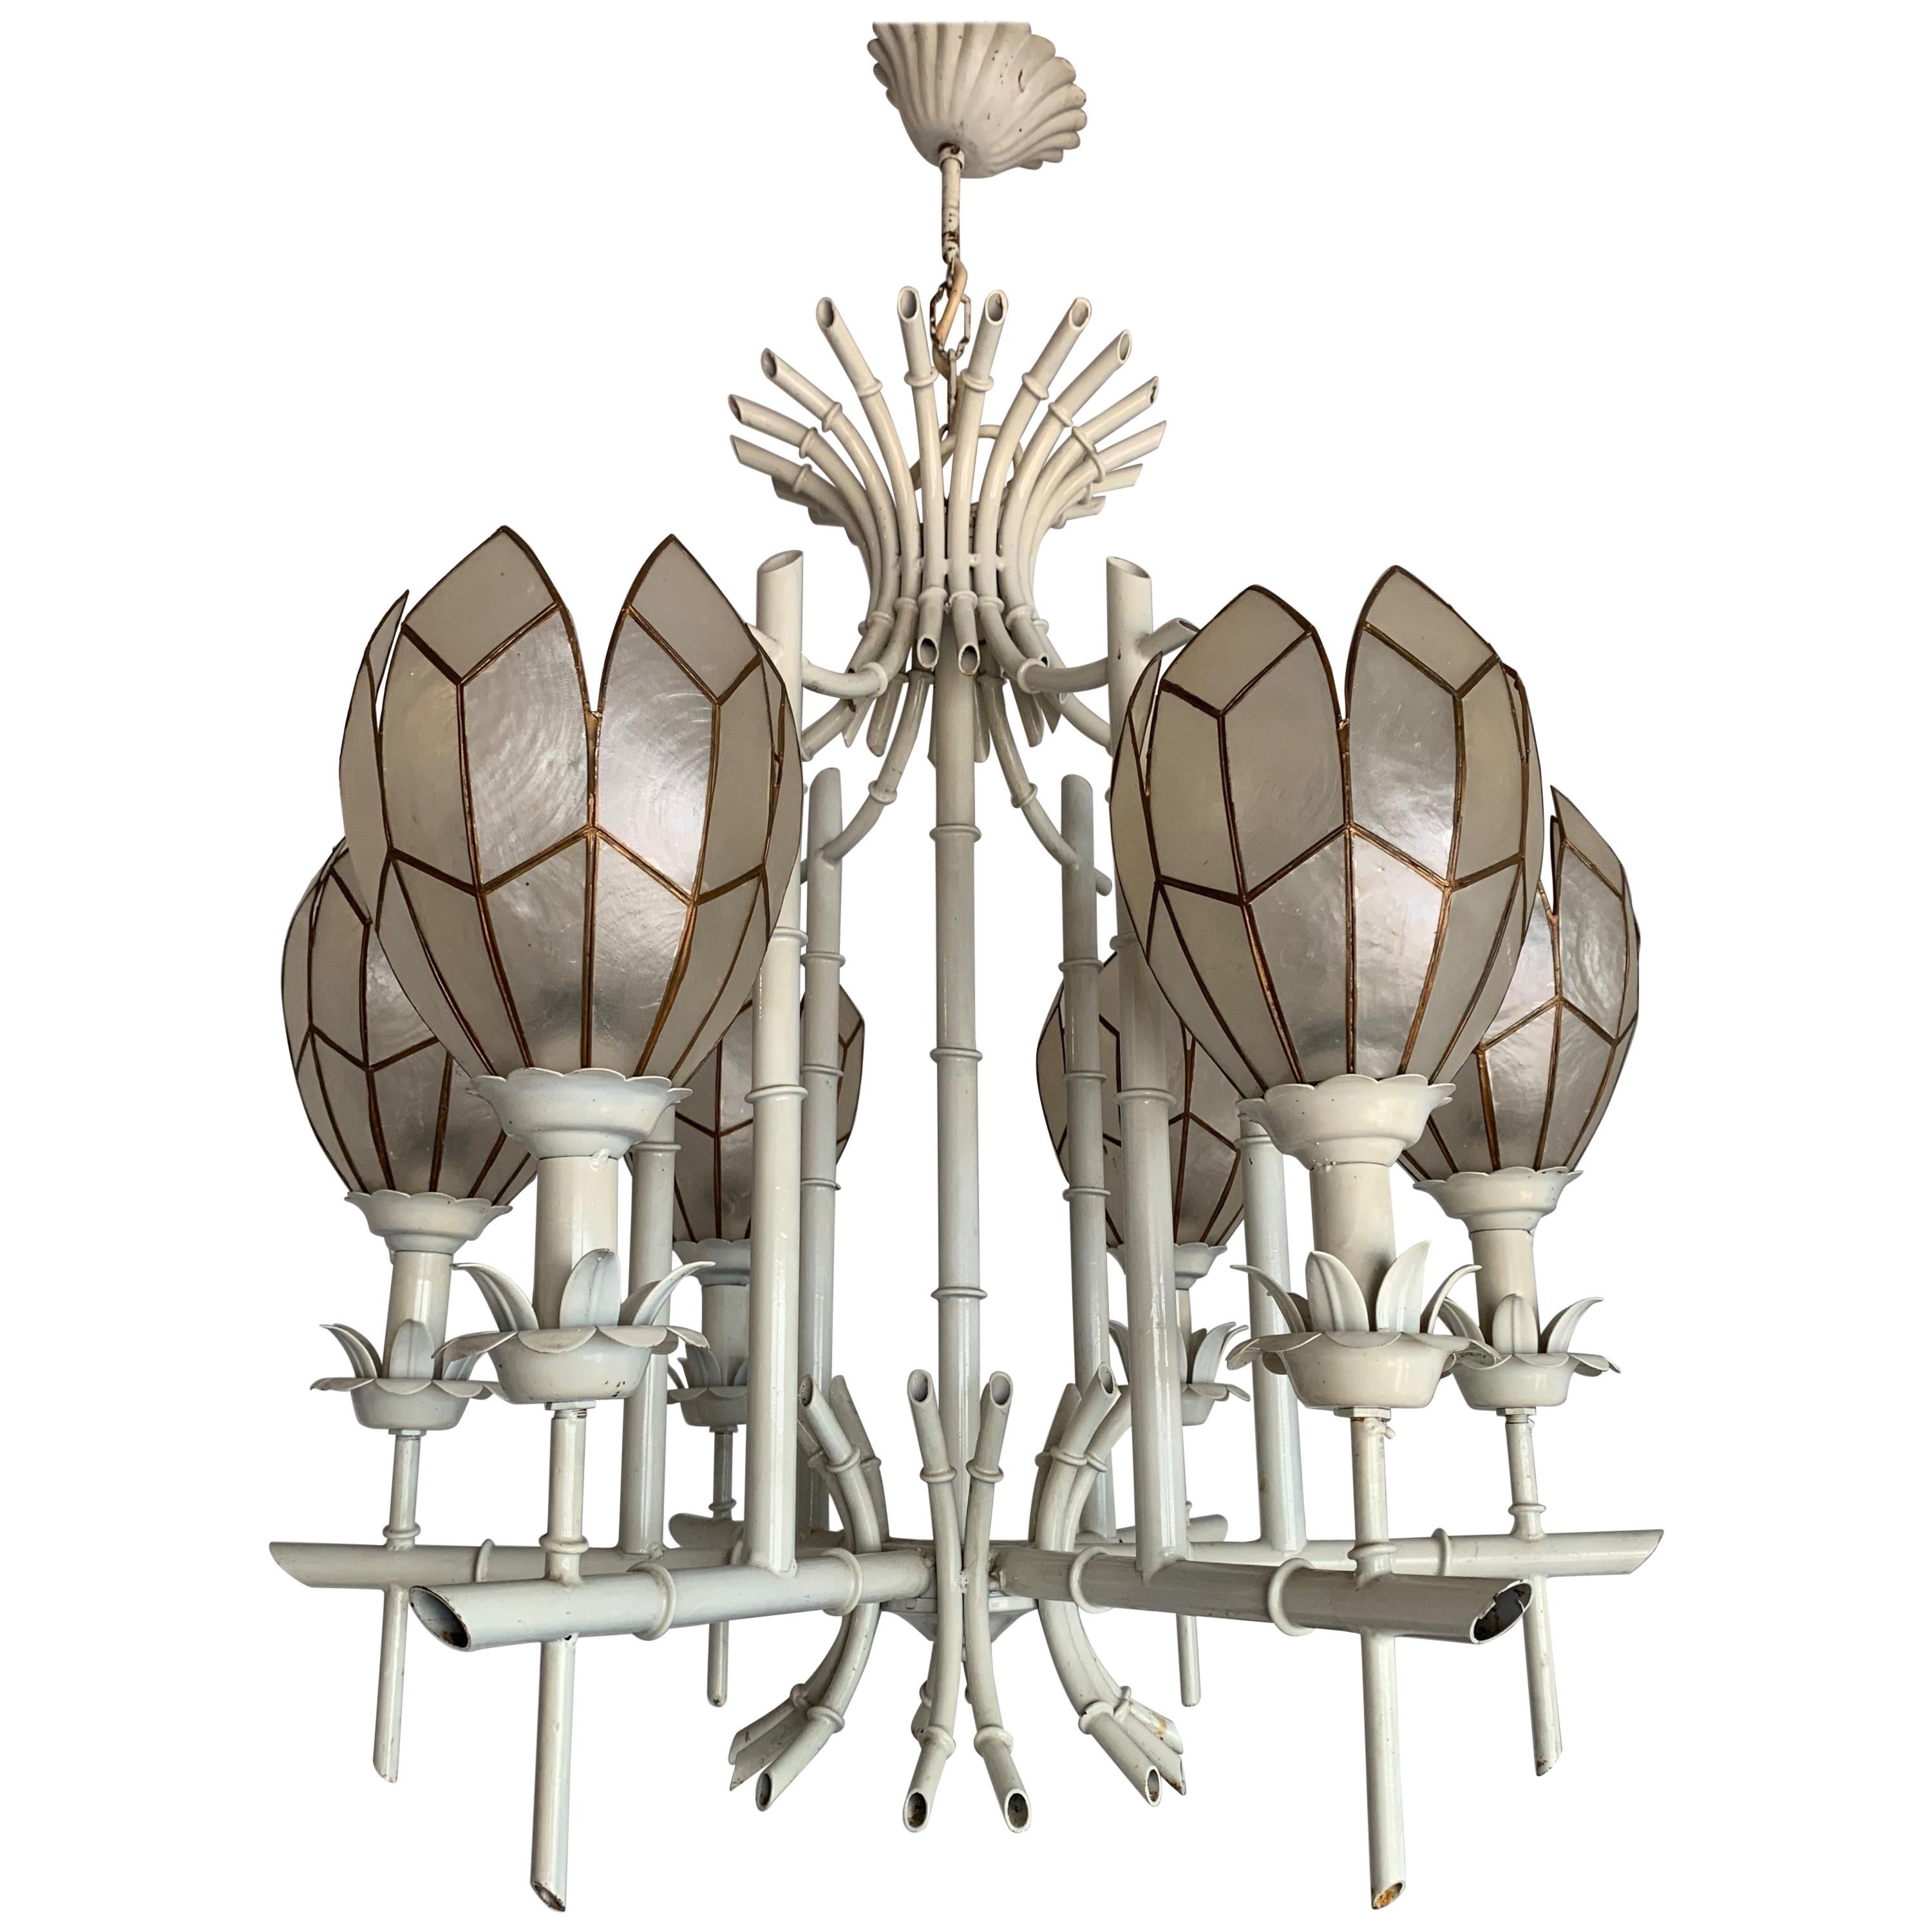 Stylish Midcentury White Metal Bamboo & Flower Design Pendant Light / Chandelier